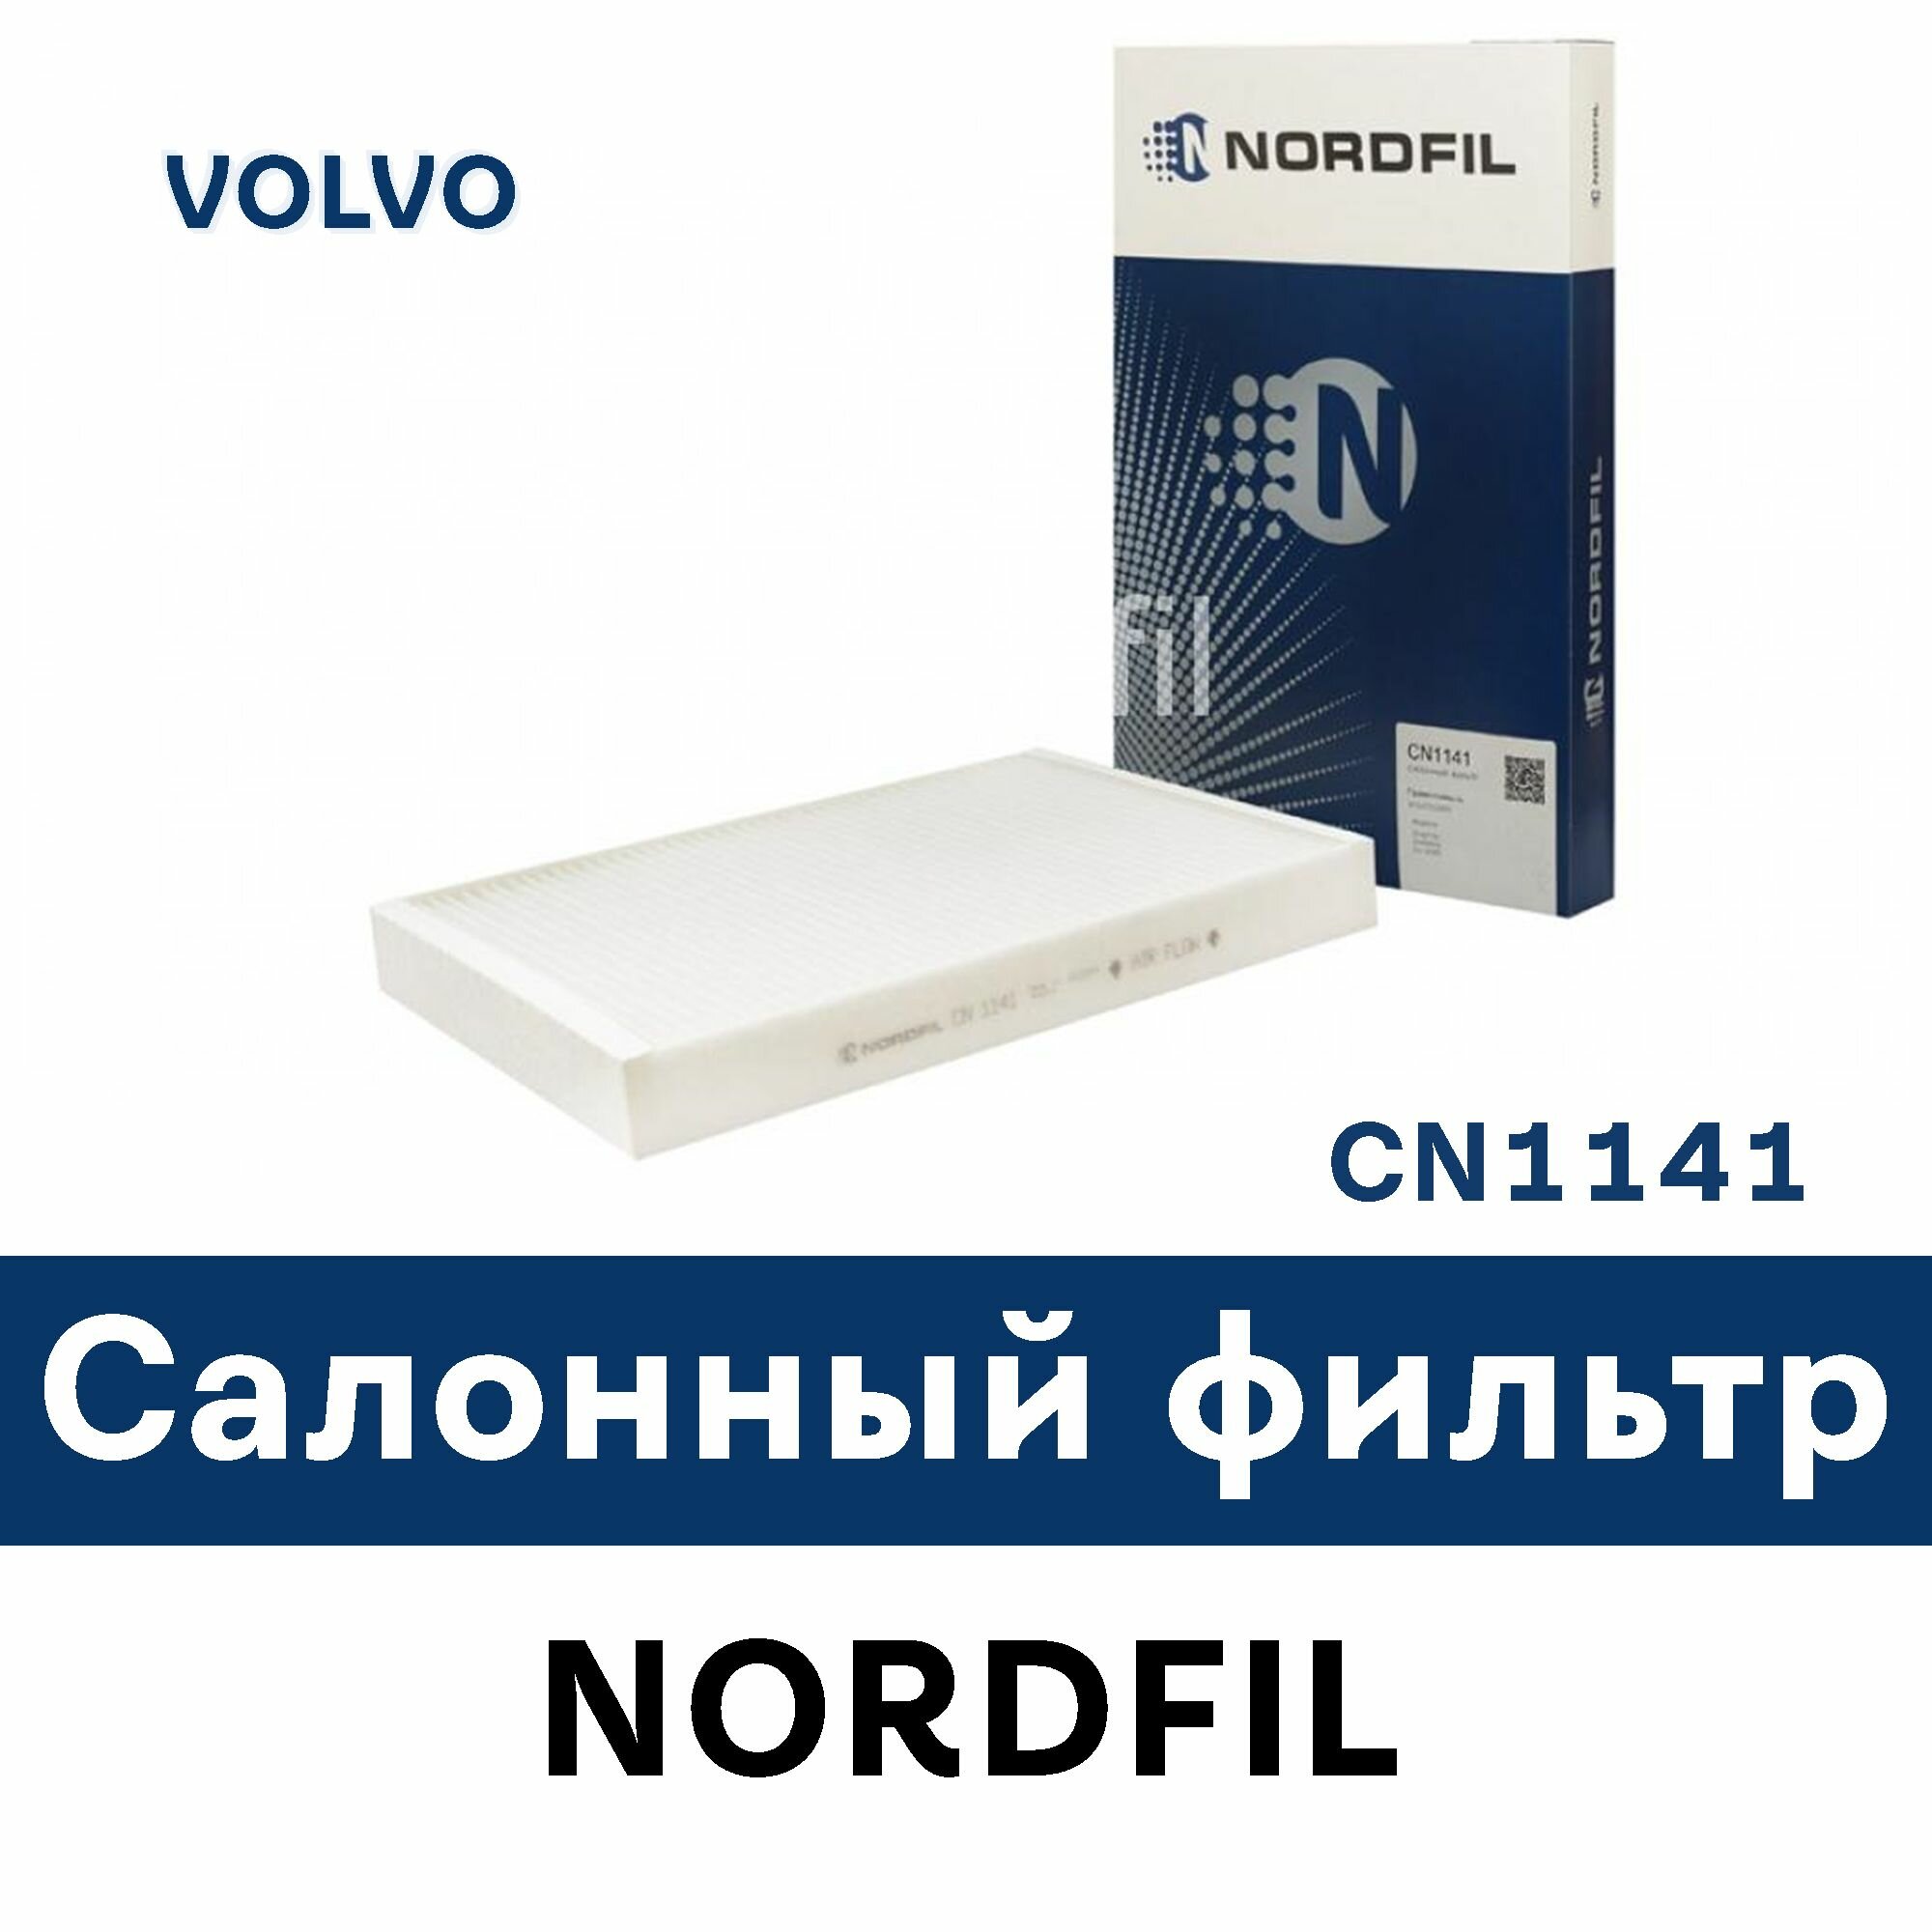 Салонный фильтр для VOLVO CN1141 NORDFIL